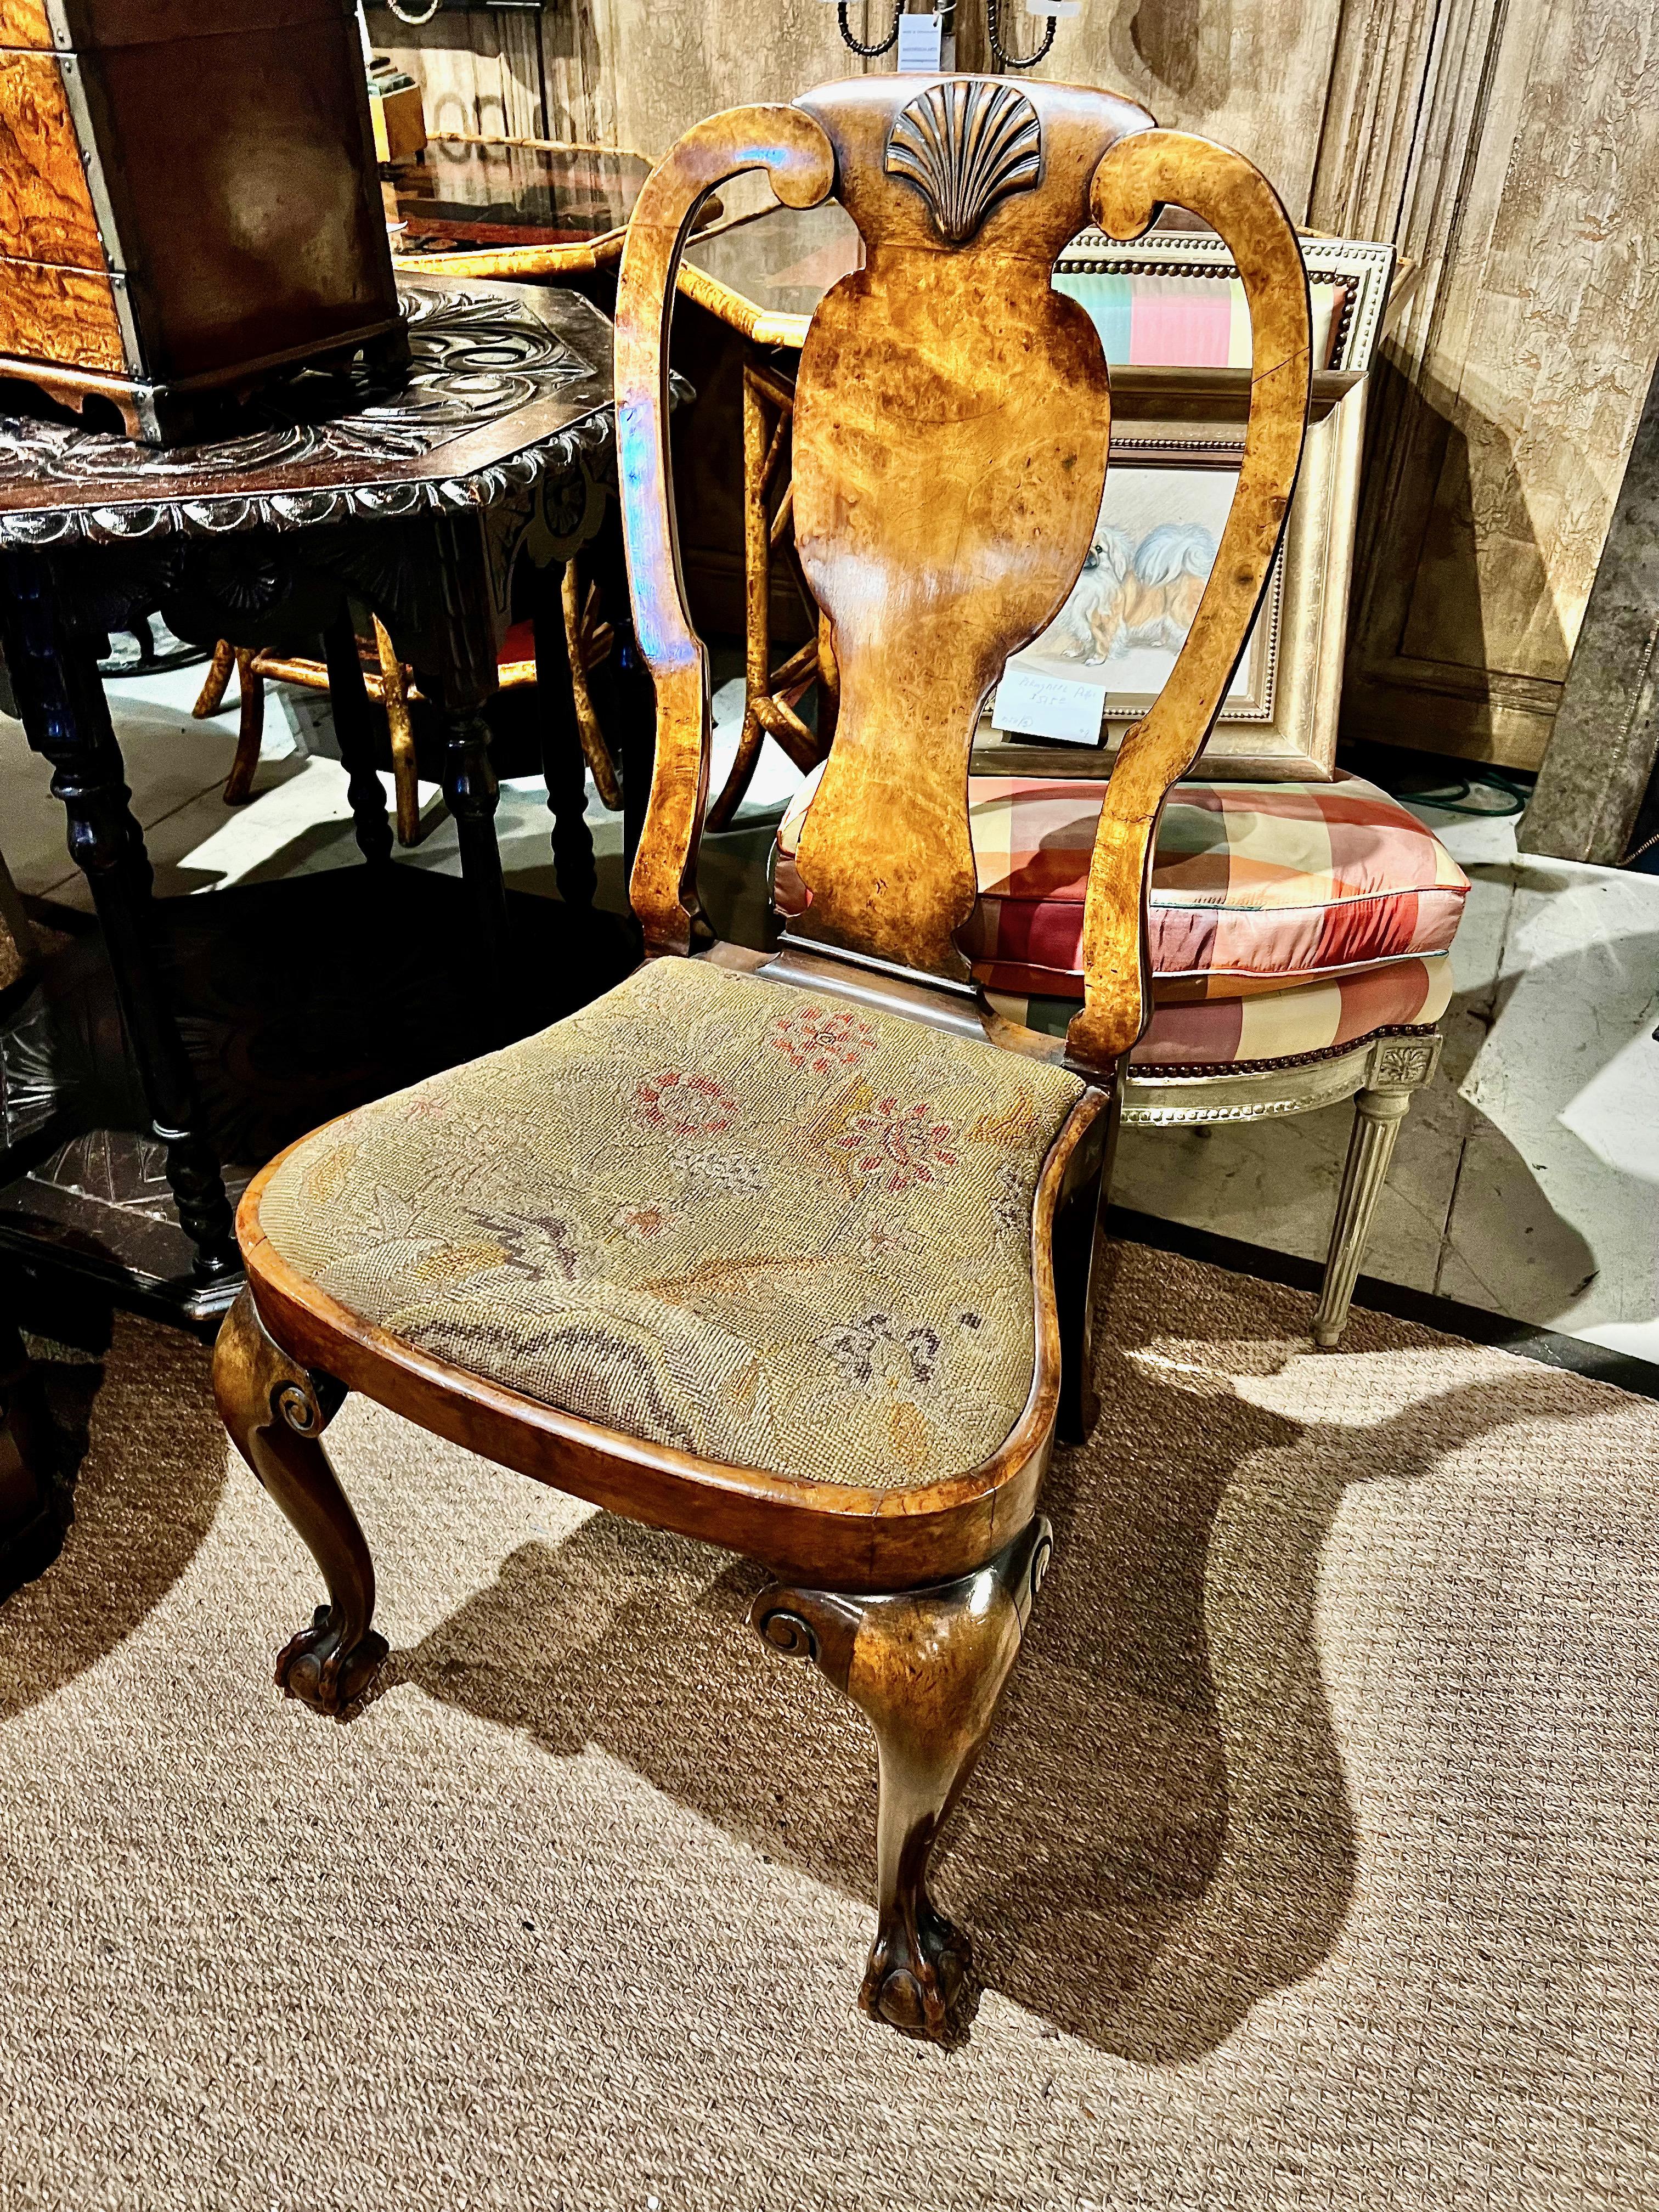 Dies ist ein sehr schöner Queen Anne Beistellstuhl aus Wurzelholz. Der Stuhl verfügt über eine fein geschnitzte Muschel an der Kammleiste, schönes Wurzelholzfurnier, geschnitzte Knie und Klauen- und Kugelfüße. Der Kompasssitz hat sein Nadelkissen